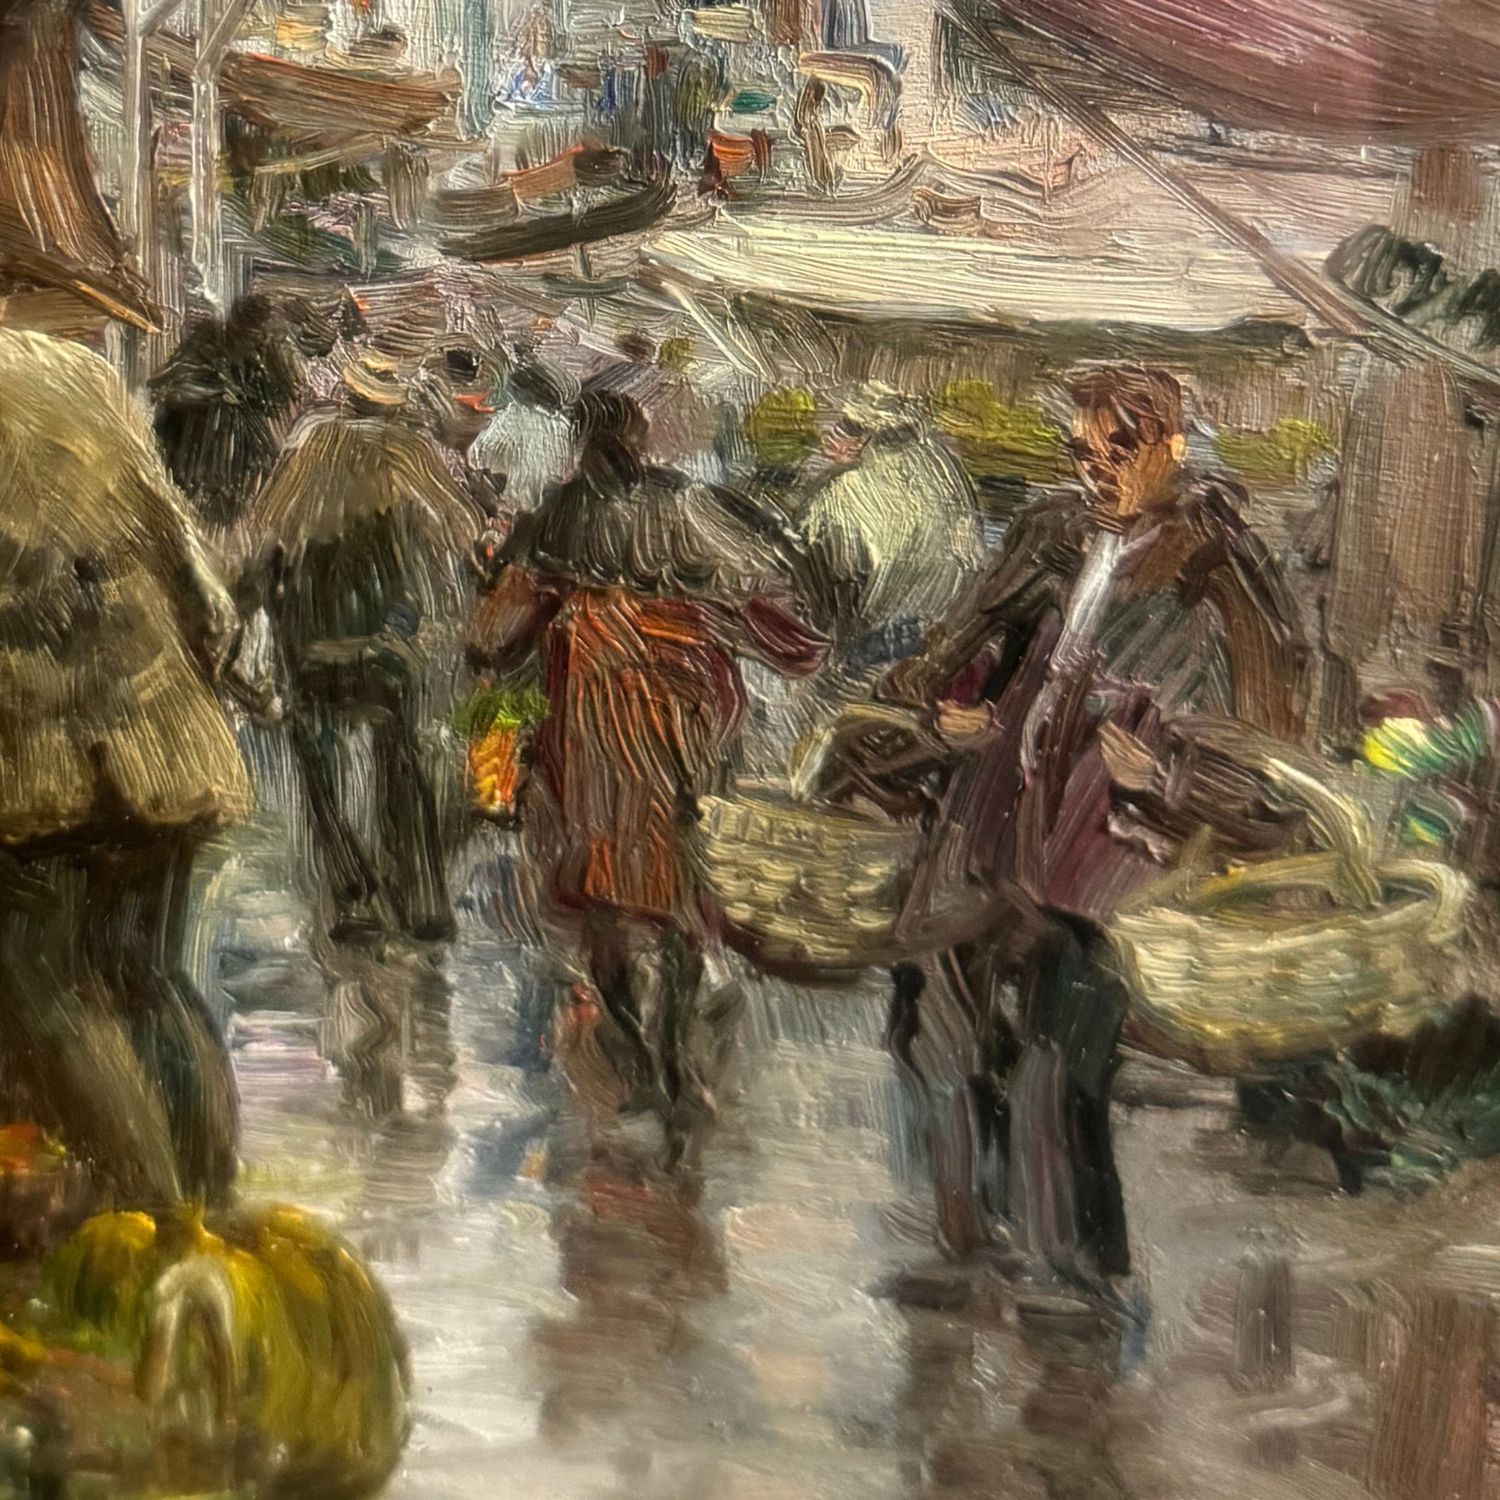 The market of Antignano - A. Martucci - Image 5 of 6